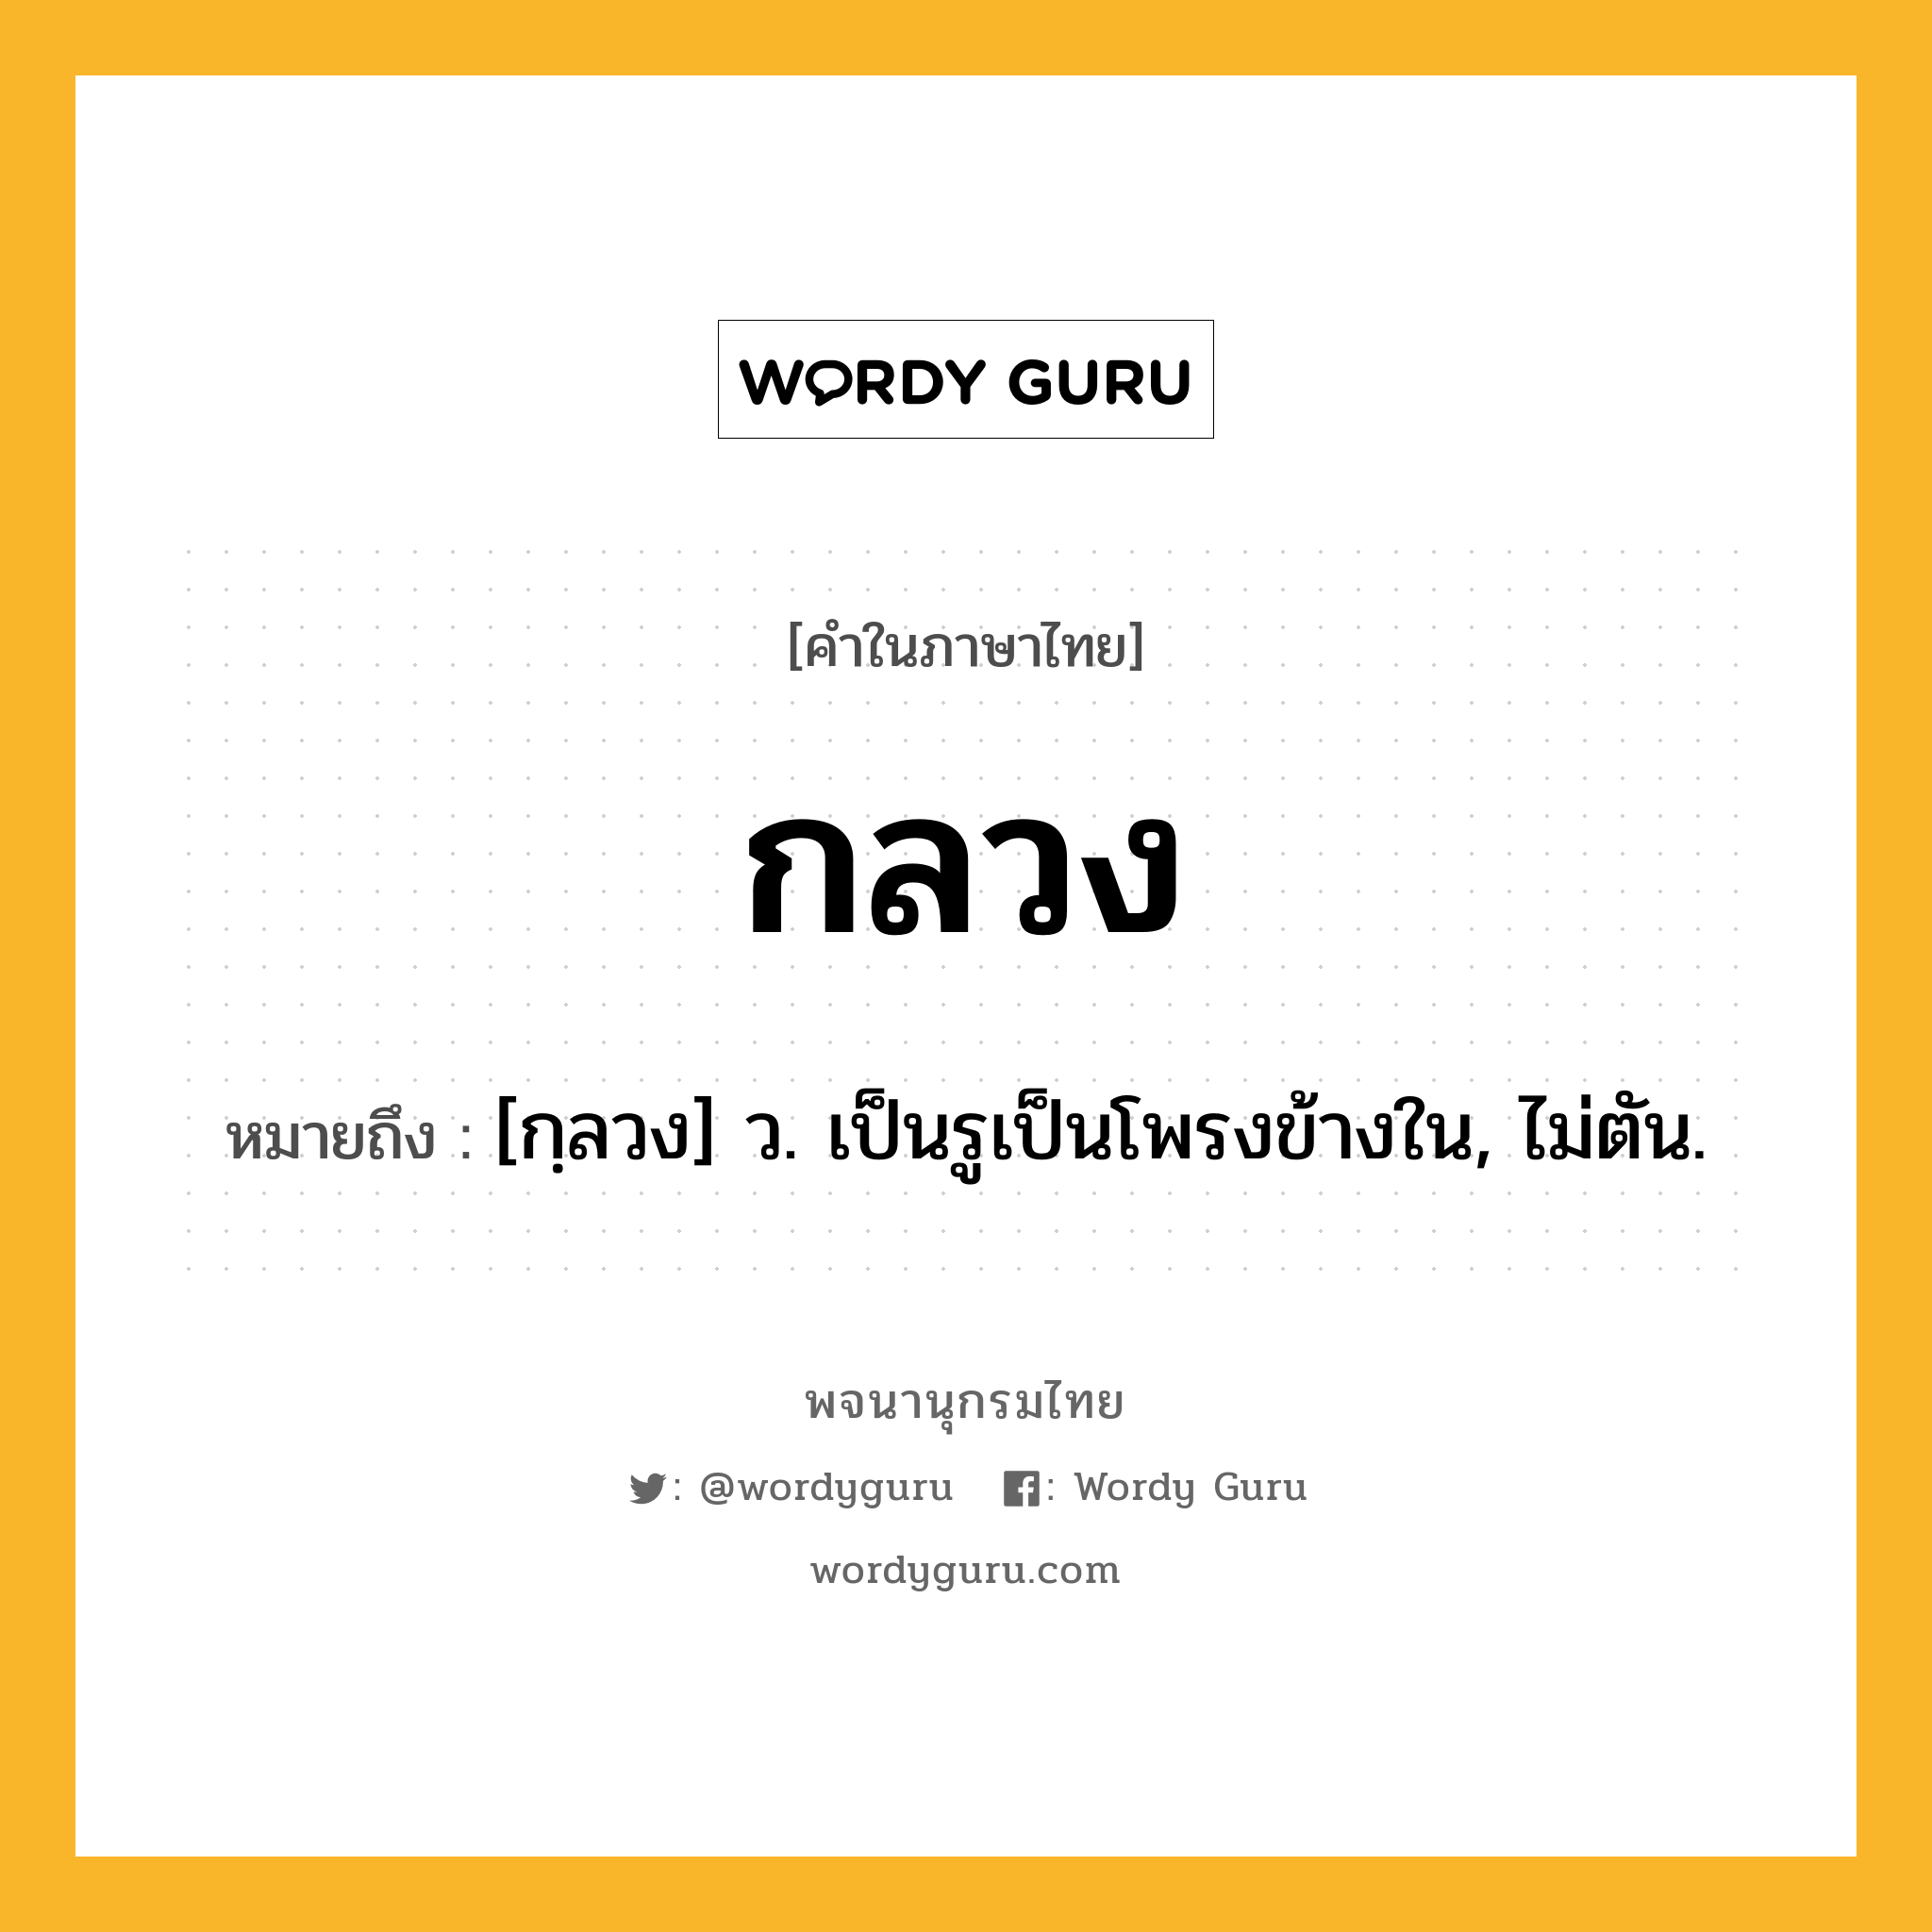 กลวง ความหมาย หมายถึงอะไร?, คำในภาษาไทย กลวง หมายถึง [กฺลวง] ว. เป็นรูเป็นโพรงข้างใน, ไม่ตัน.